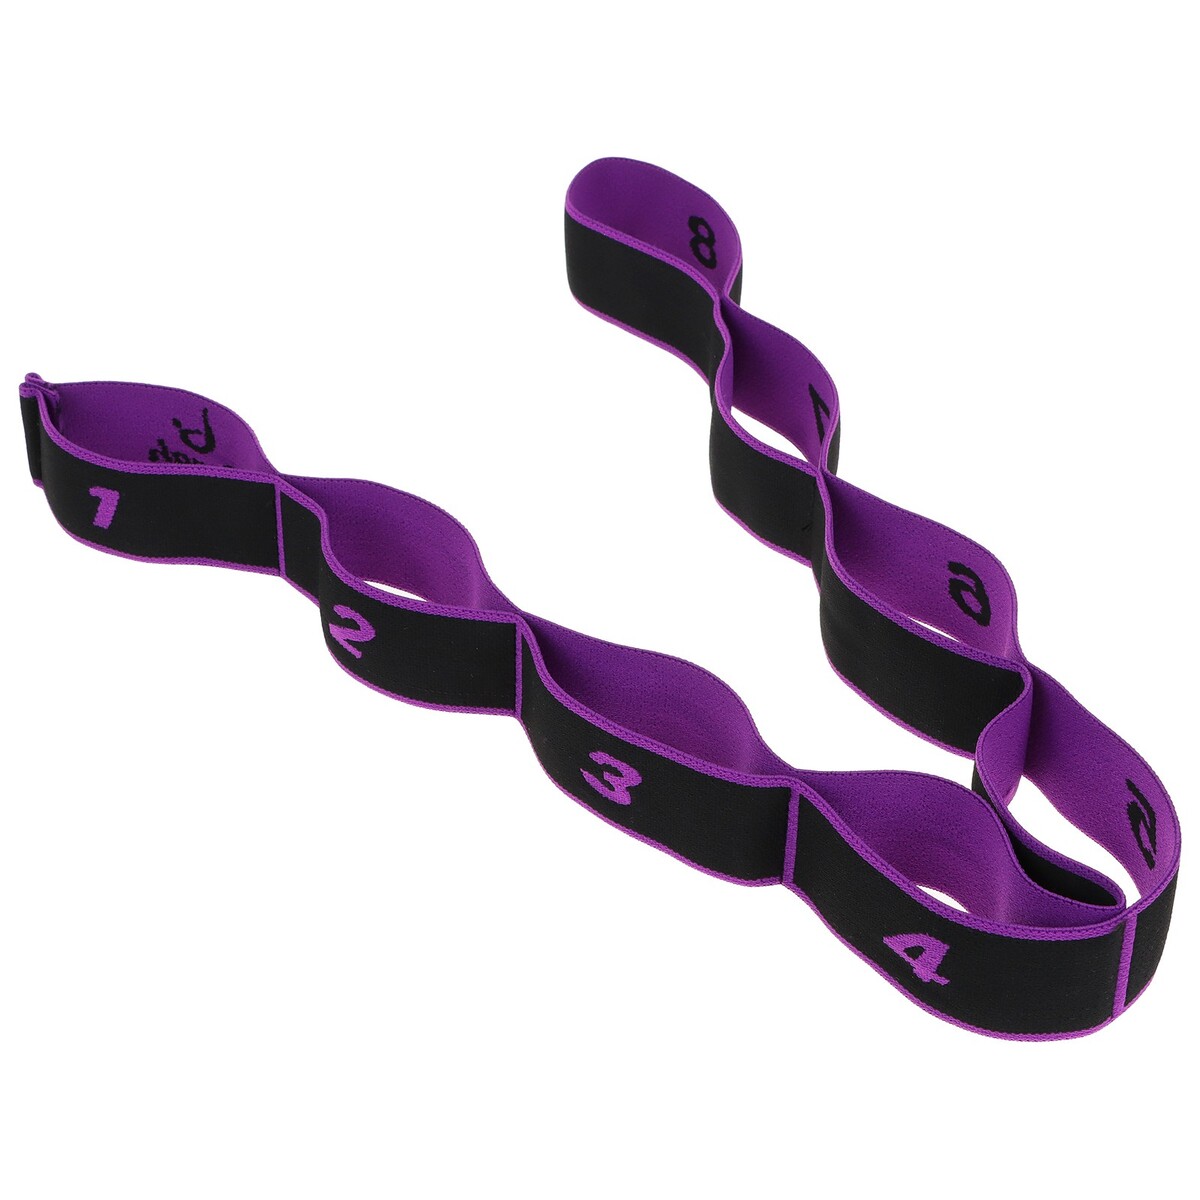 Эспандер-лента sangh, эластичная, с захватами, 90х4 см, цвет фиолетовый эспандер sportex thighmaster на сжатие bm501 фиолетовый